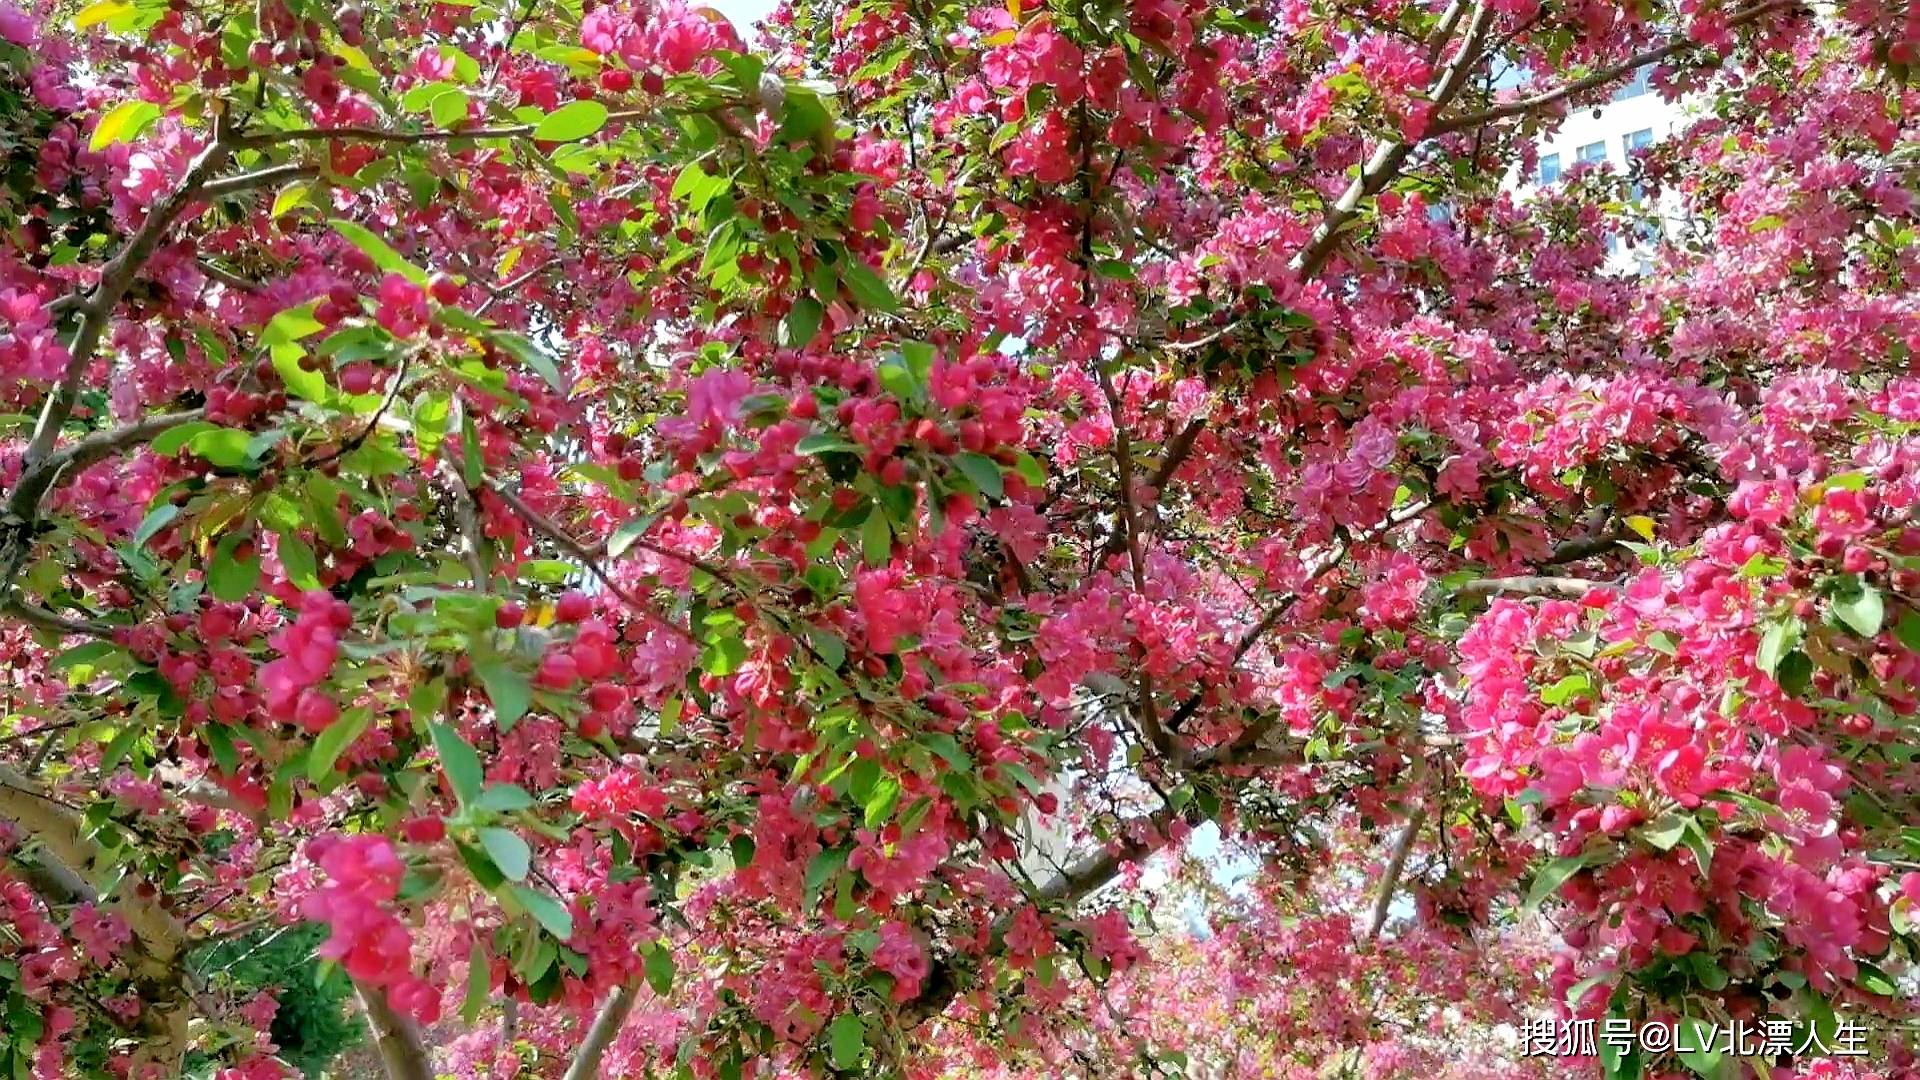 元大都公园海棠花溪之二，海棠花争奇斗艳， 魅惑众生，22种海棠品种配图